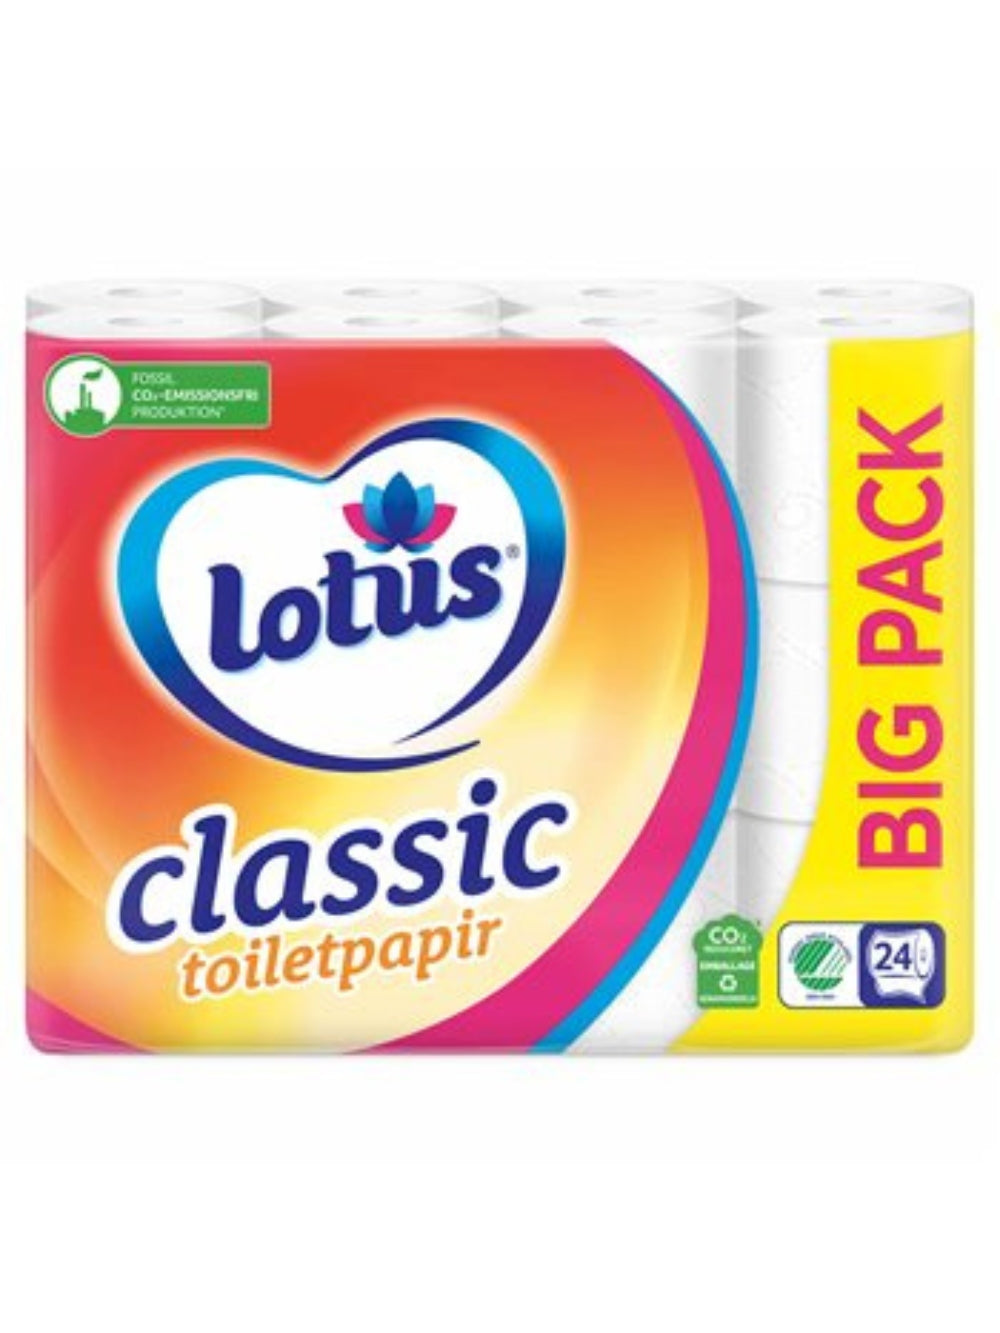 Lotus Classic Toiletpapir 24rl